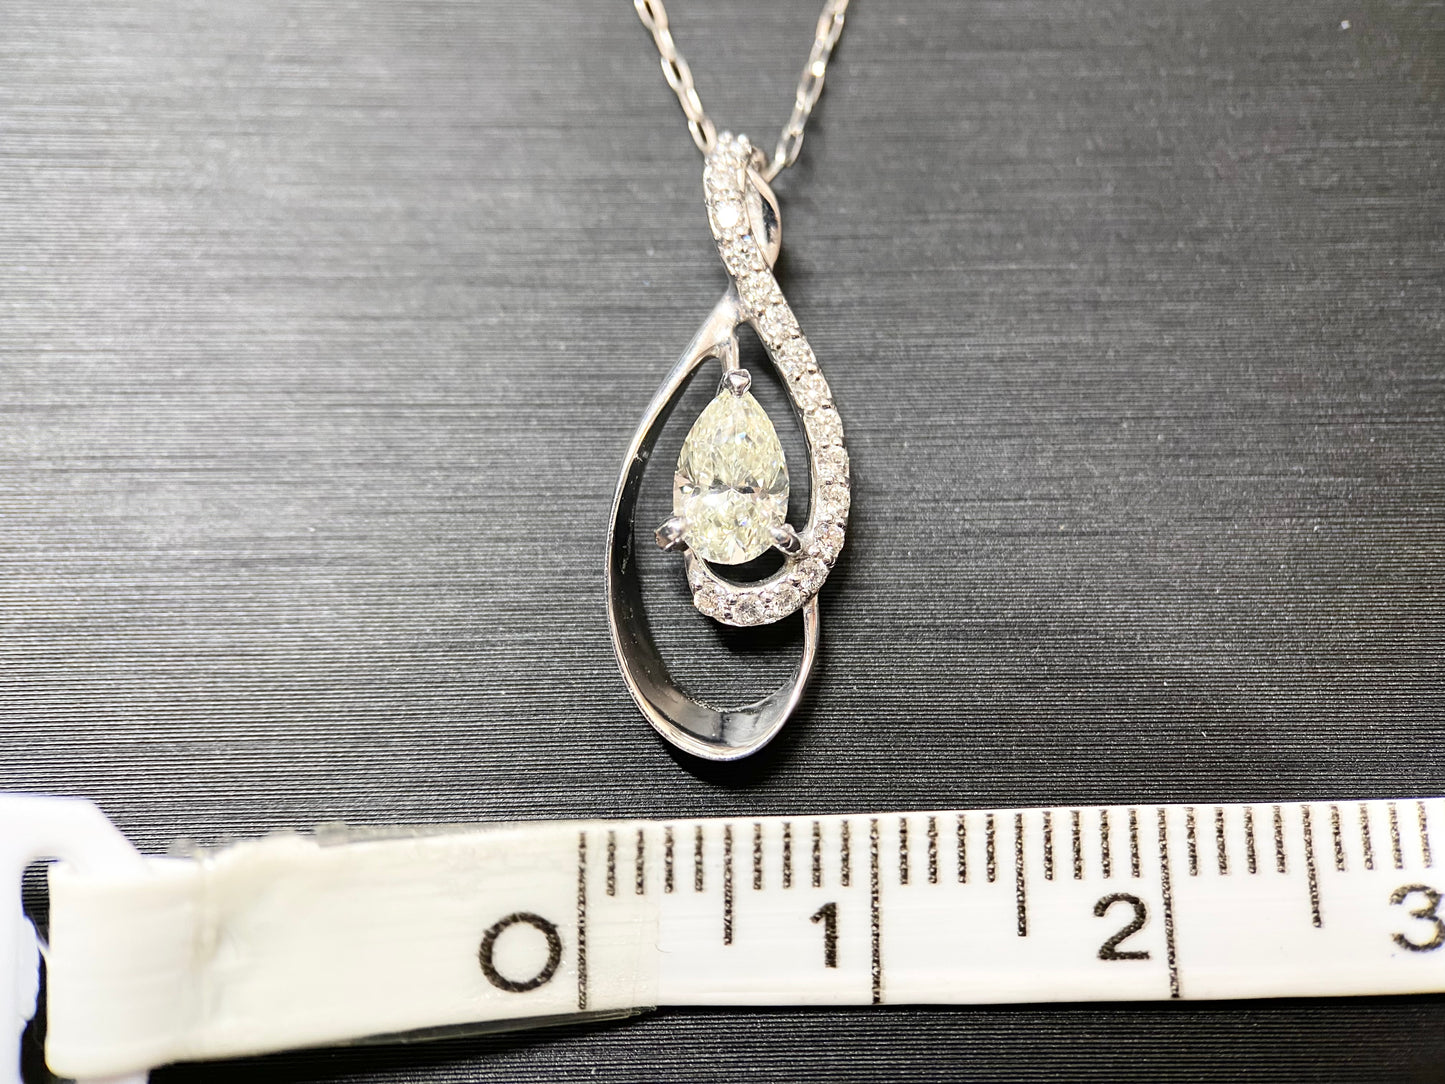 New] [Rare Stone] Brilliant Cut 1 Diamond Necklace Jewelry